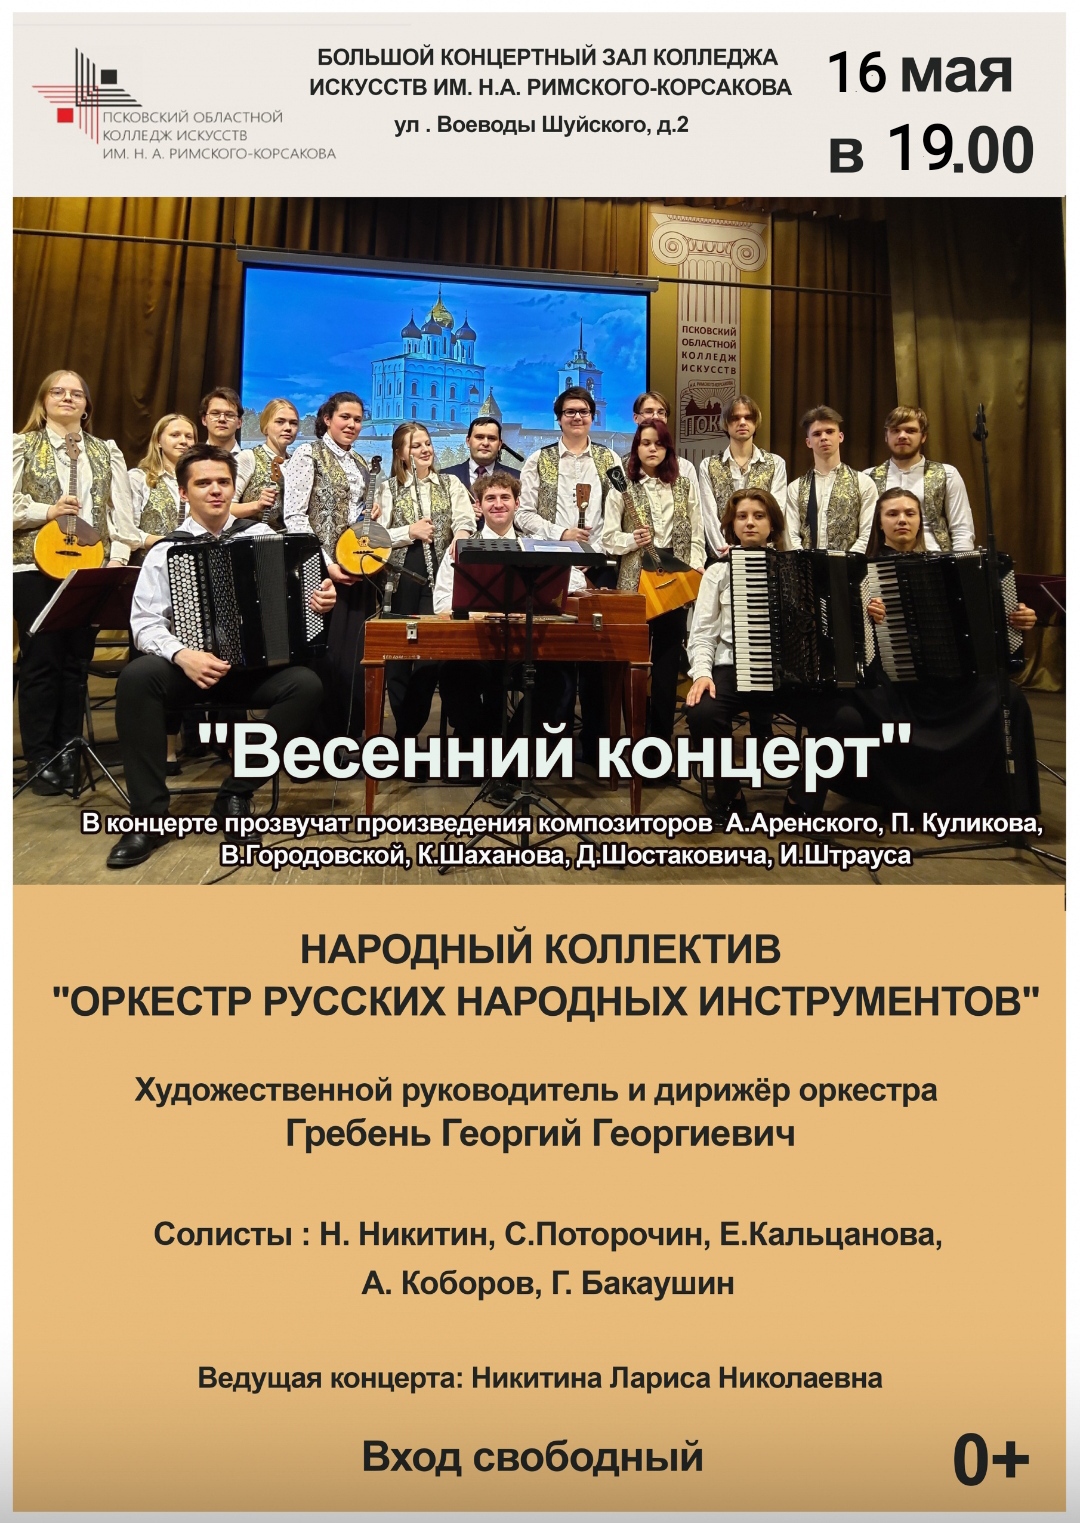 kontsert-orkestra-russkih-narodnyh-instrumentov-projdyot-v-kolledzhe-iskusstv-16-maya